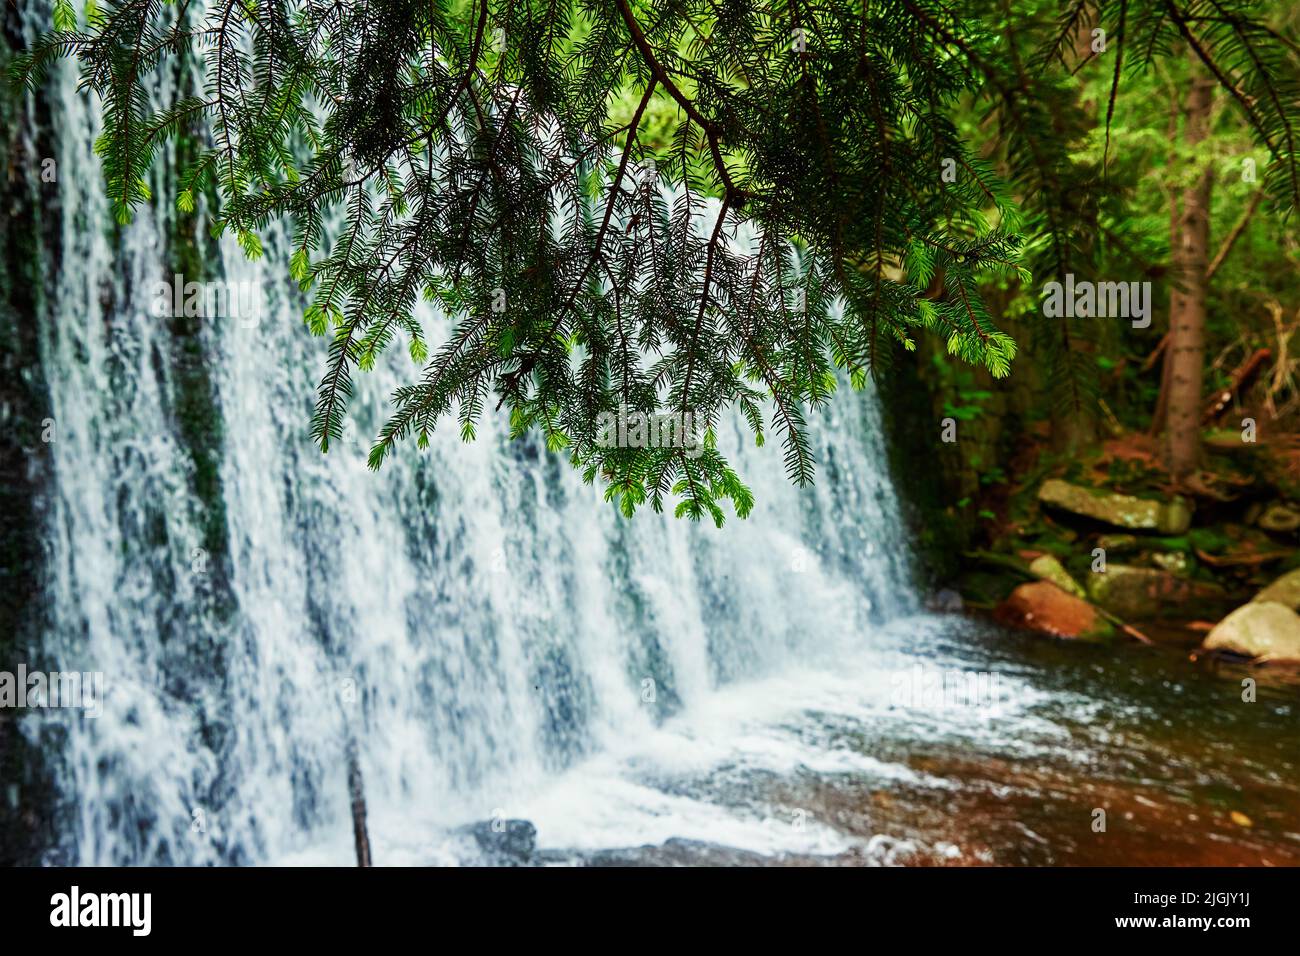 Cascata sul fiume Lomnica nelle montagne di Karpacz in Polonia, bellissimo paesaggio naturale Foto Stock